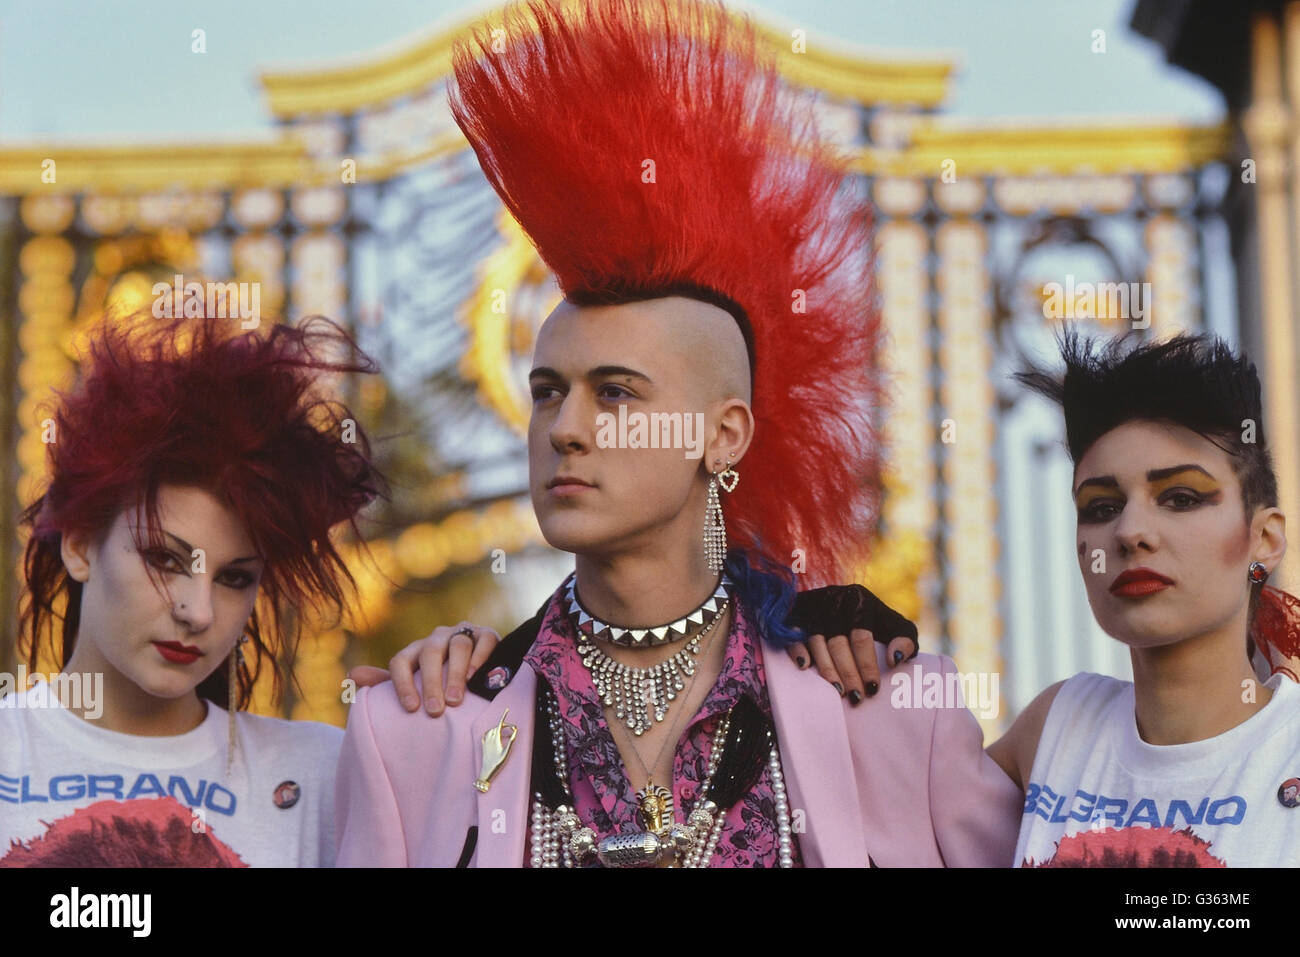 Matt Belgrano' der Herr Punk'stehend mit zwei weiblichen Punks. London. England. UK. Europa, ca. 1980 Stockfoto